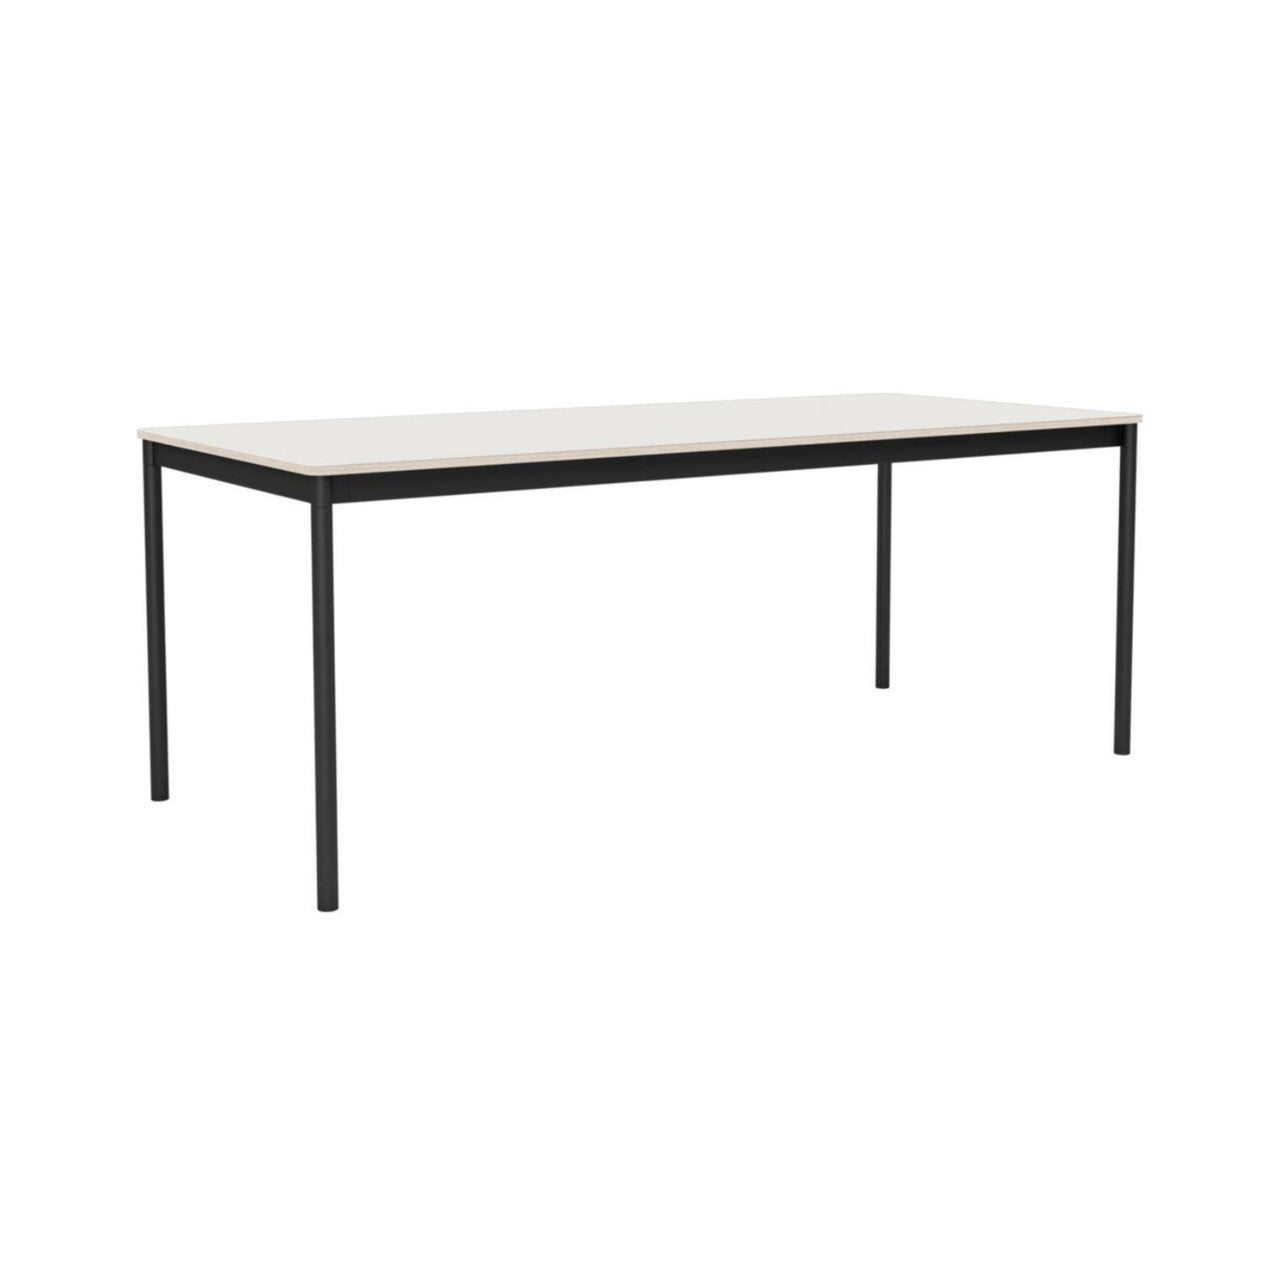 Base Table: Medium + White Nanolaminate + Plywood + Black